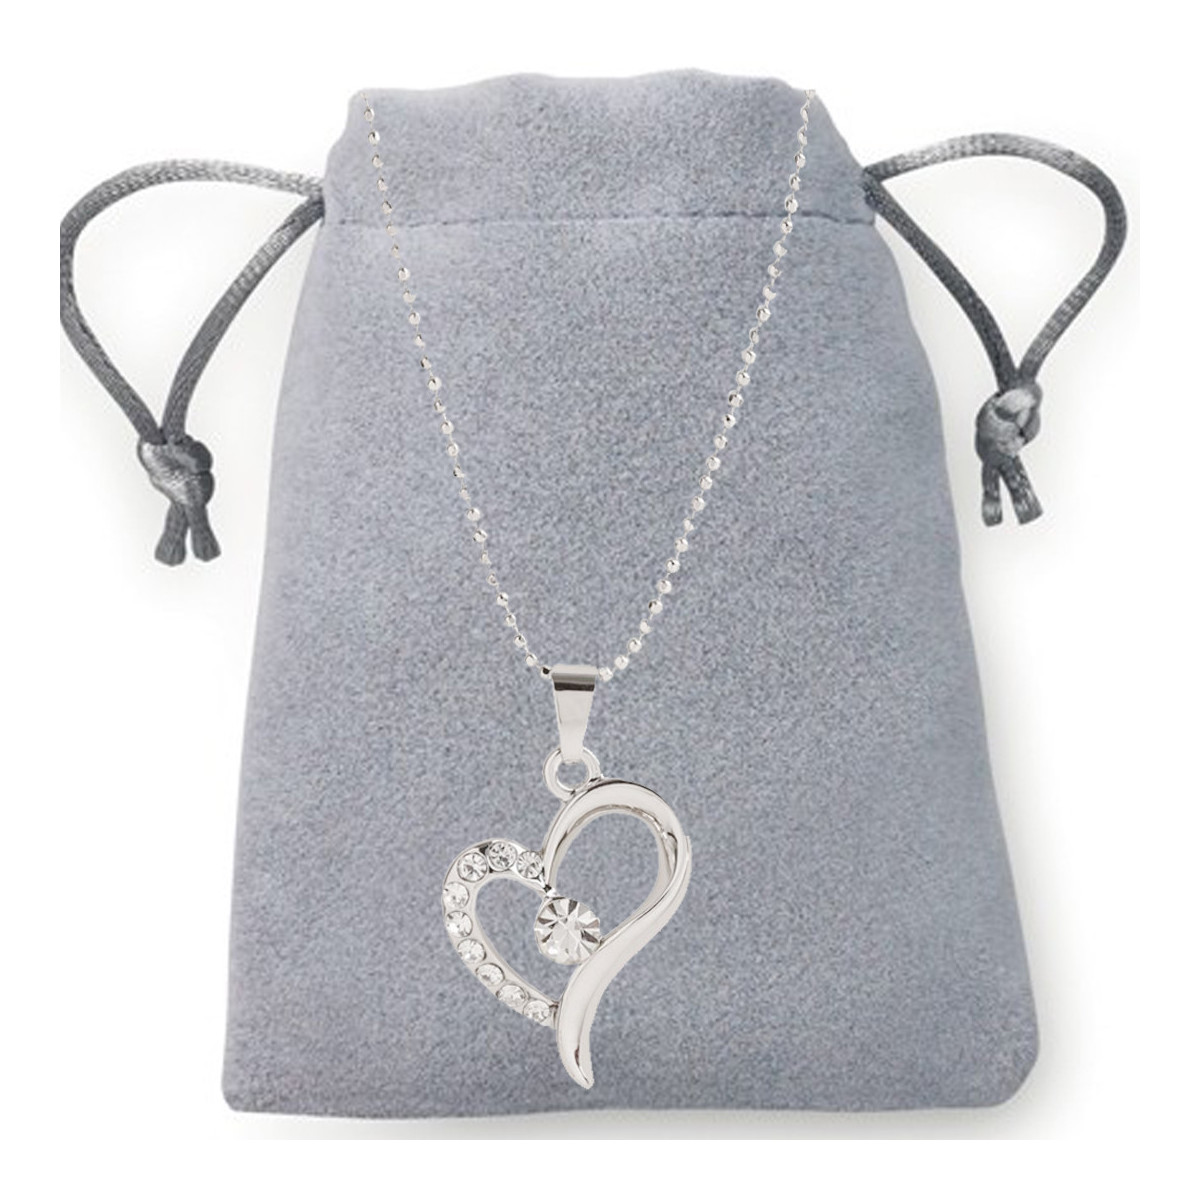 Pendentif en forme de coeur et diamants dans une pochette en daim à offrir en cadeau